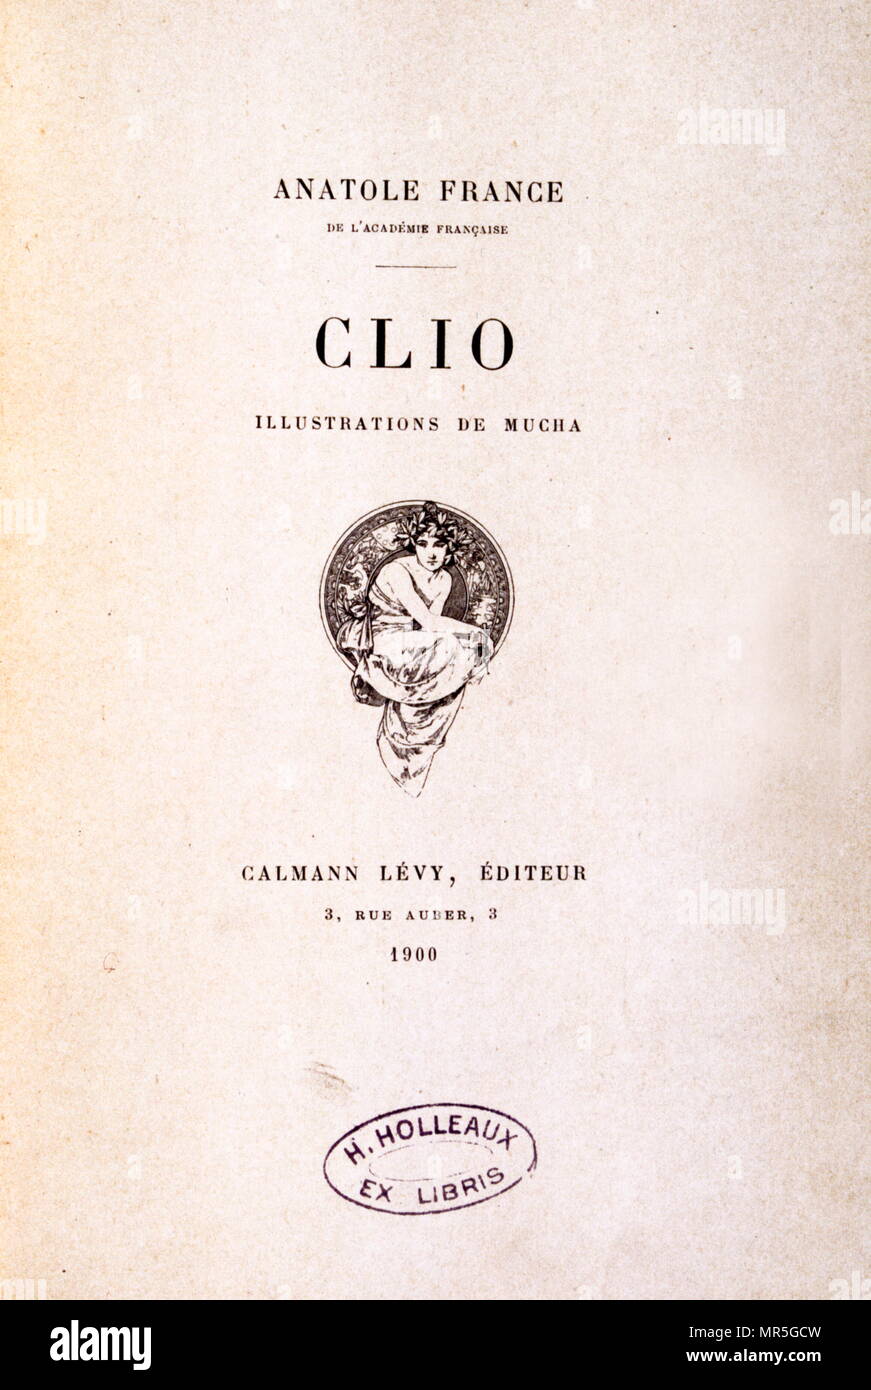 Titelseite für das Buch "Clio" (1900); der französische Schriftsteller Anatole France. Anatole France (1844 - 1924), war ein französischer Dichter, Journalist und Schriftsteller. Stockfoto